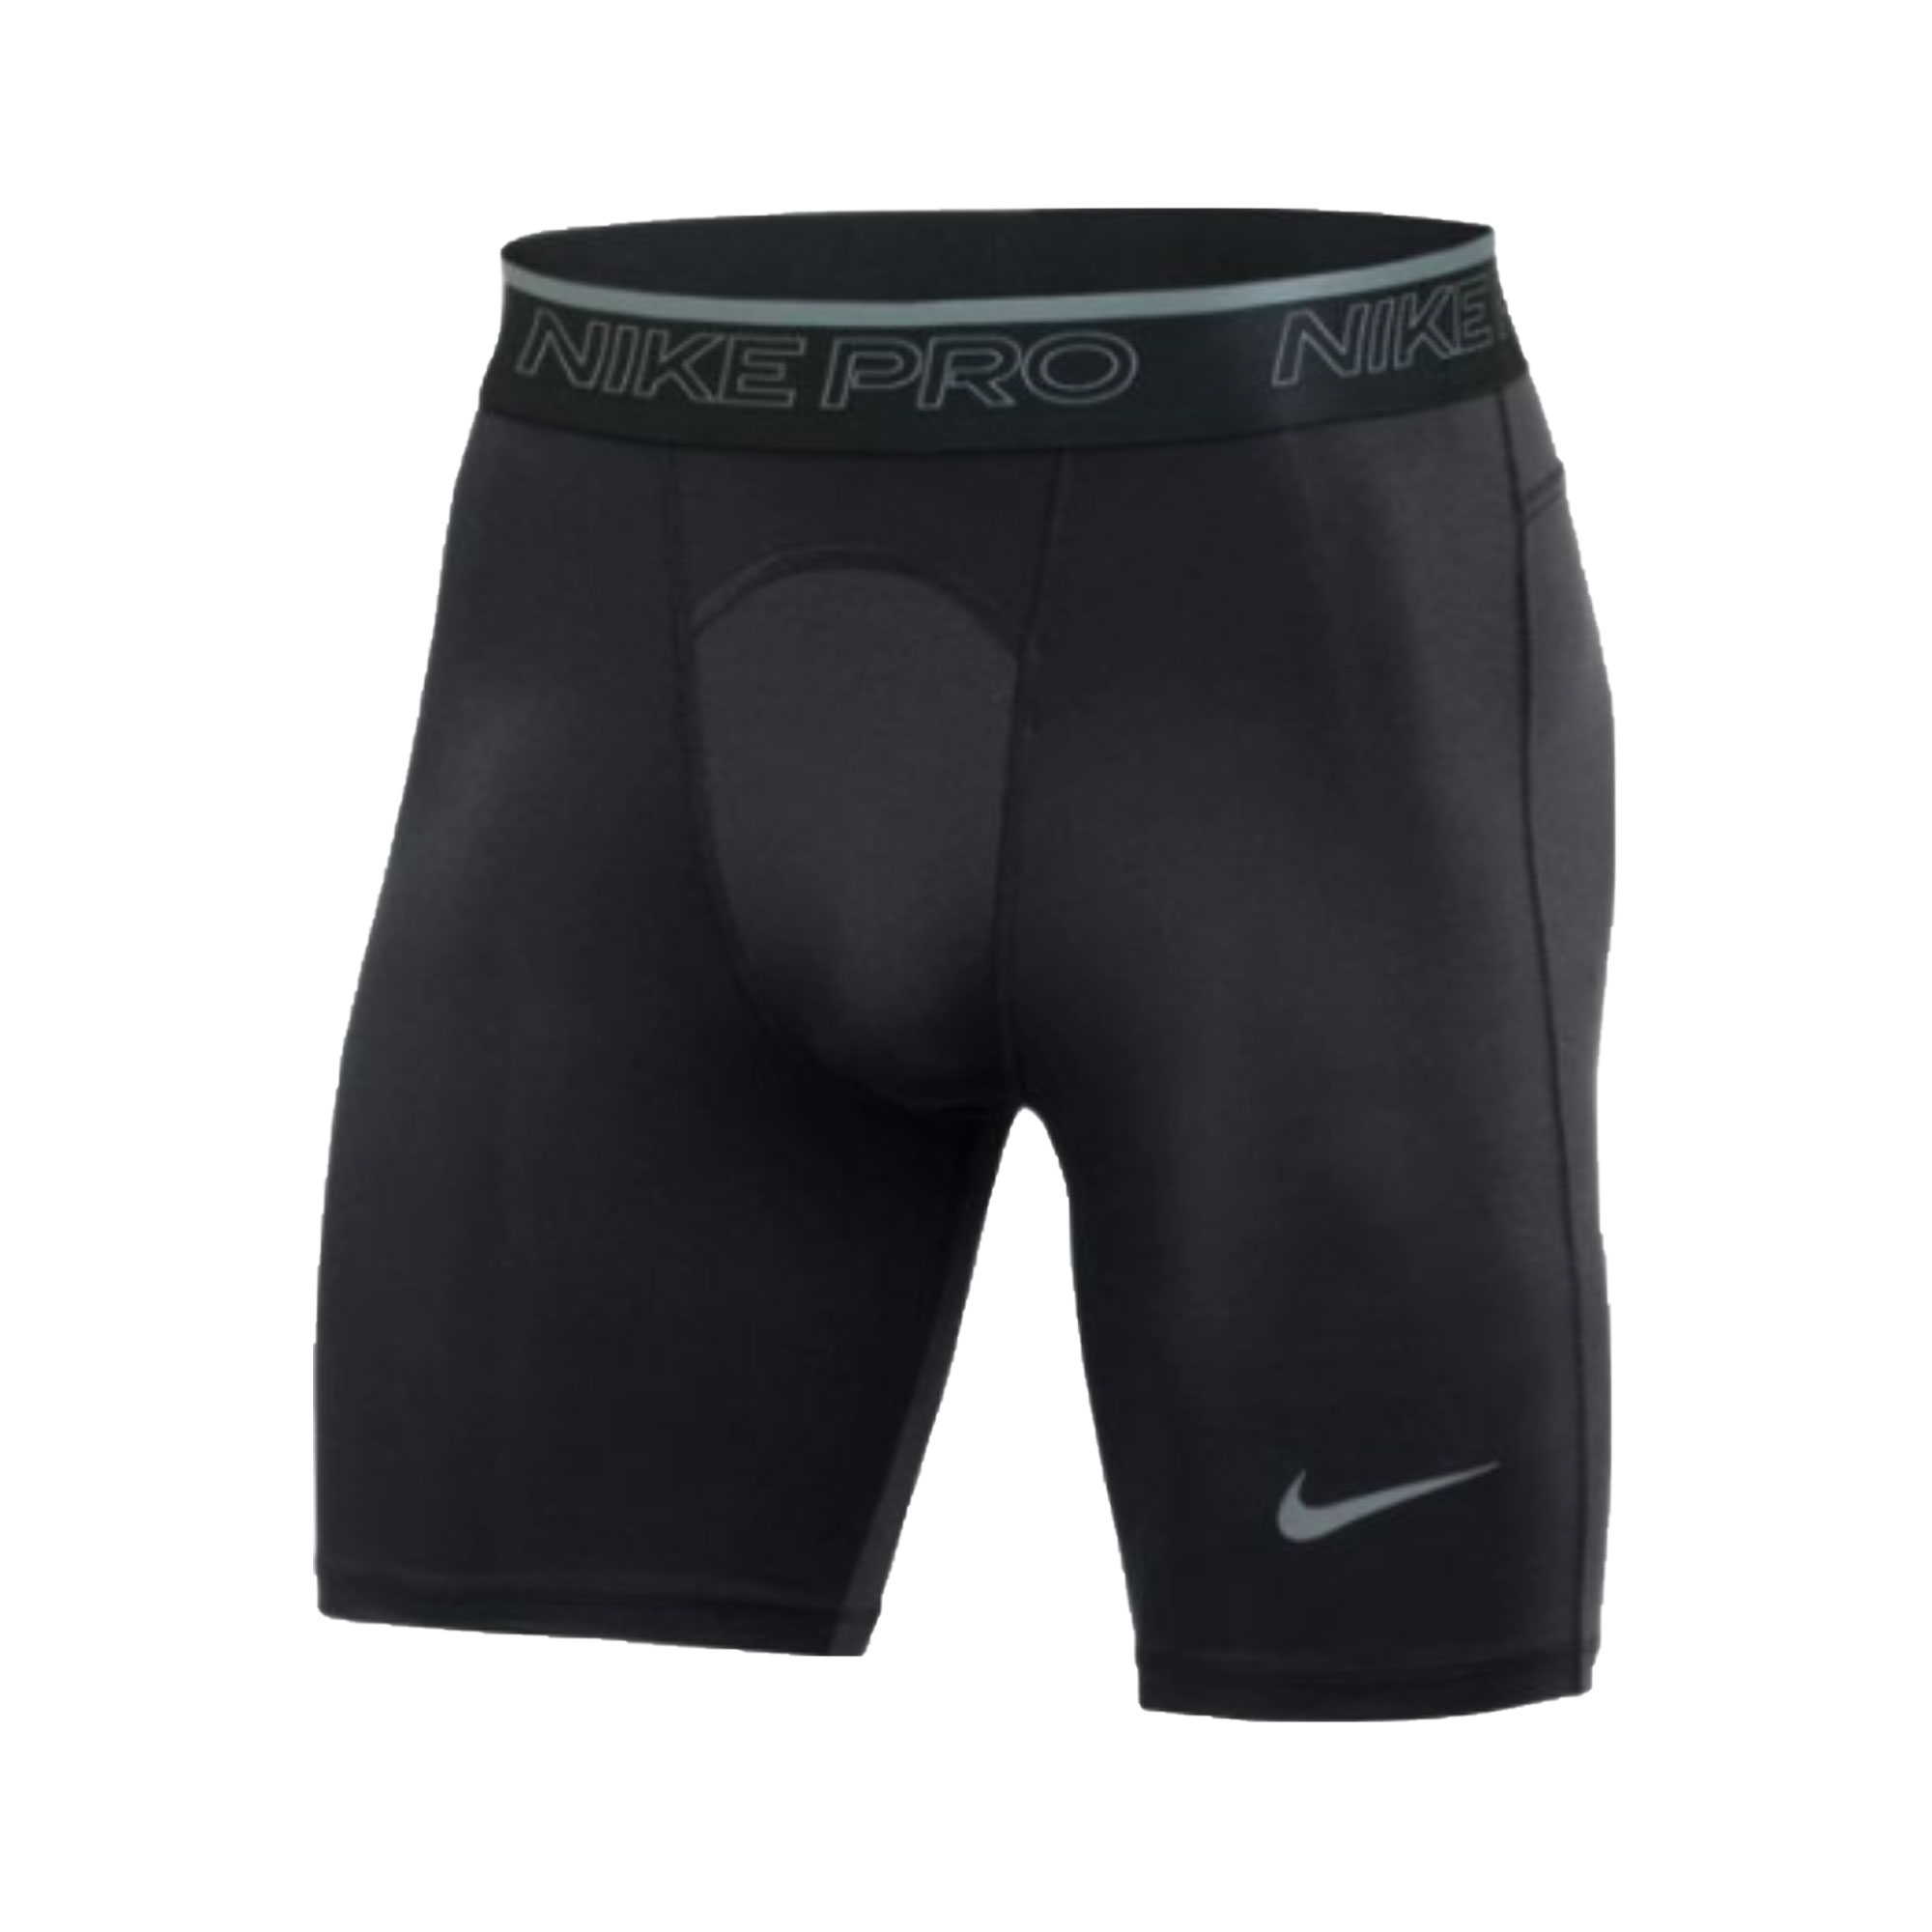 stefanssoccer.com:Nike Pro Training Compression Shorts - Black